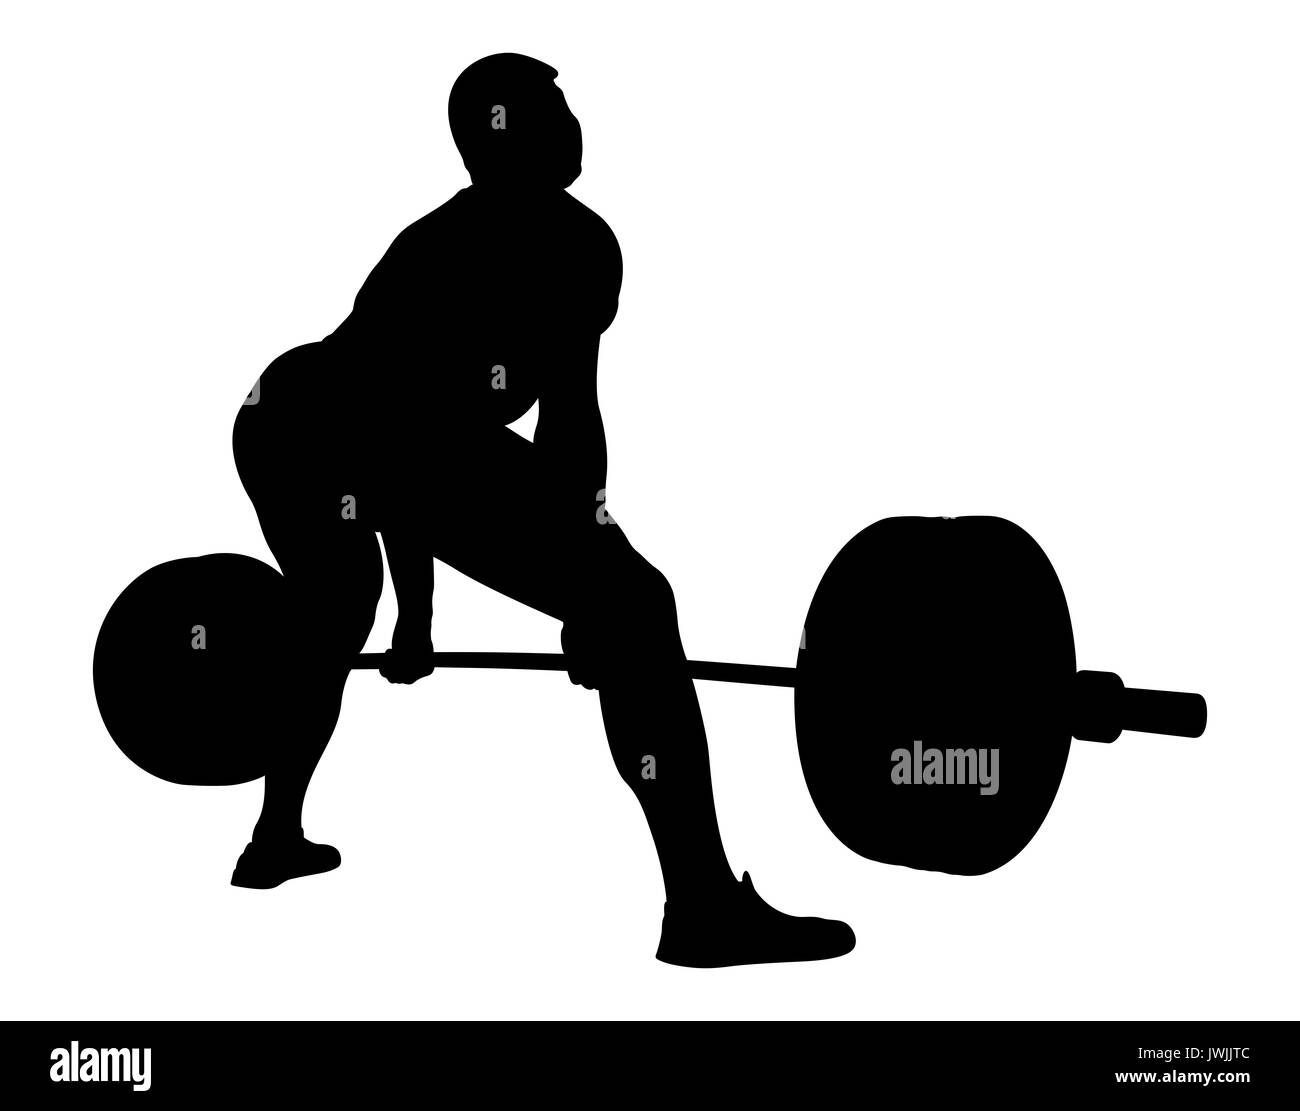 back athlete powerlifter exercise deadlift black silhouette Stock Photo